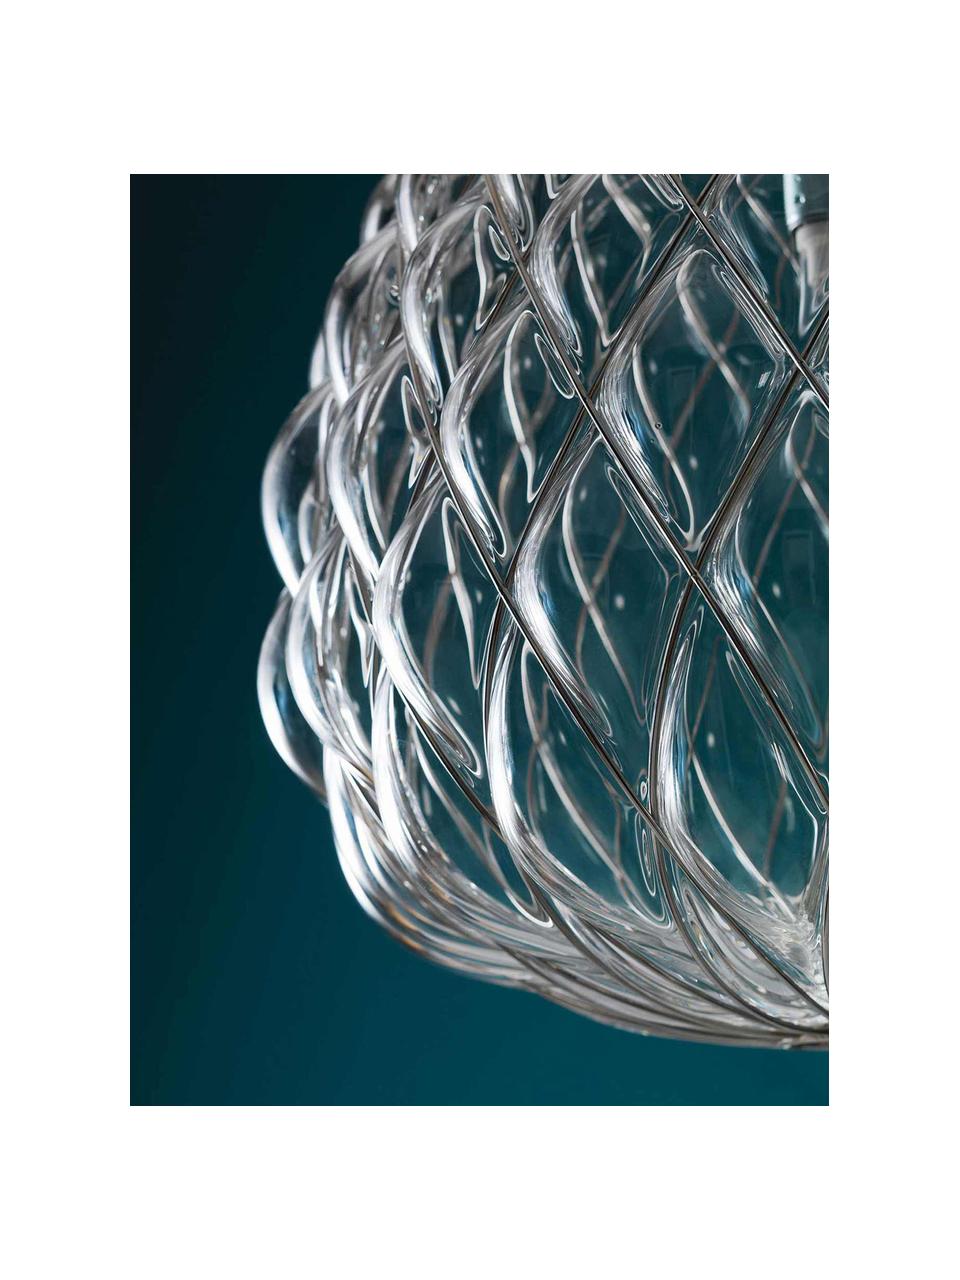 Suspension artisanale Pinecone, Transparent, argenté, Ø 50 x haut. 52 cm